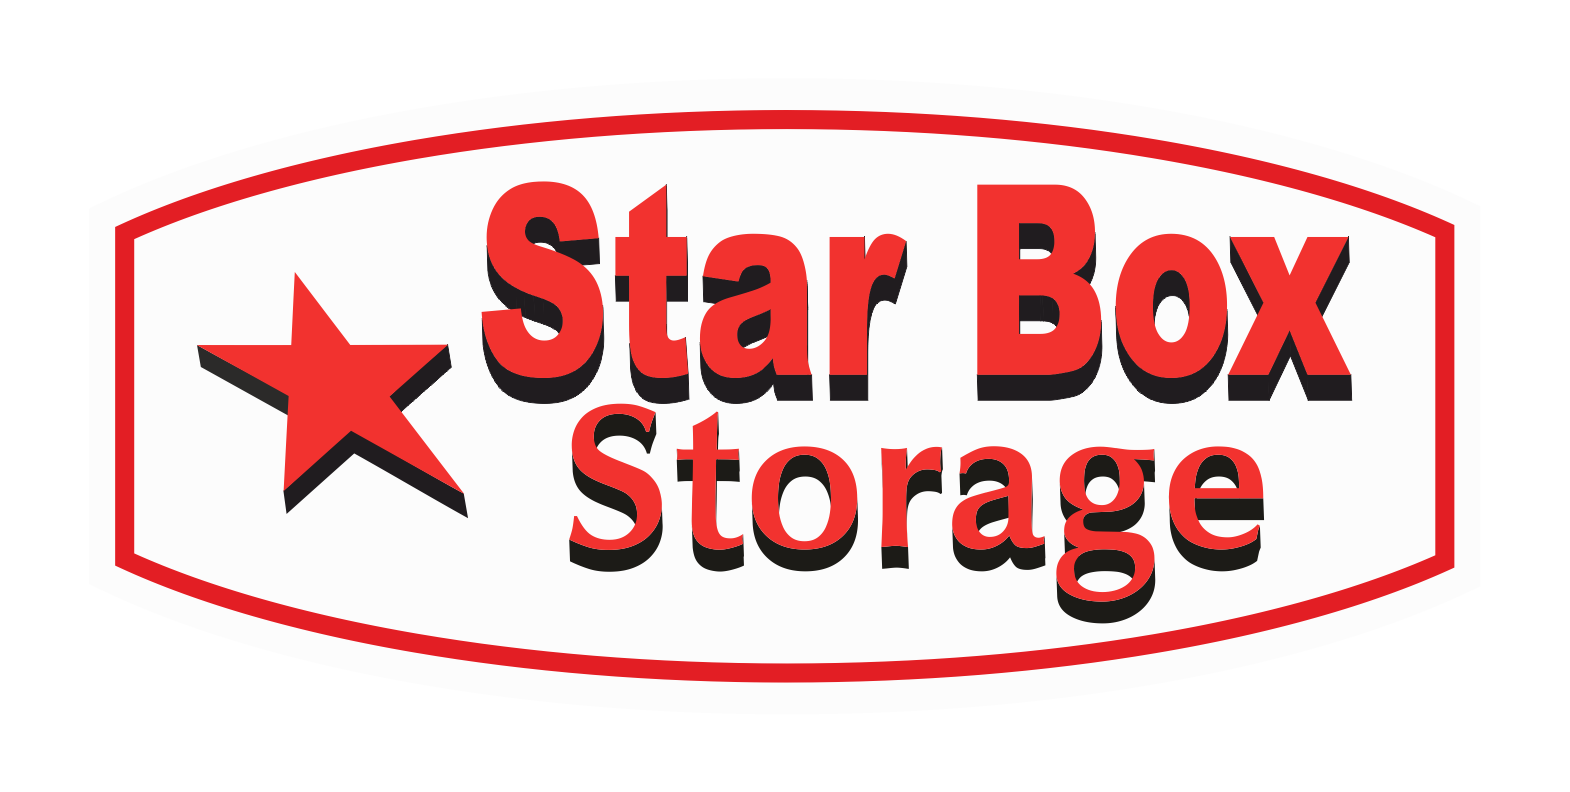 Starbox Storage